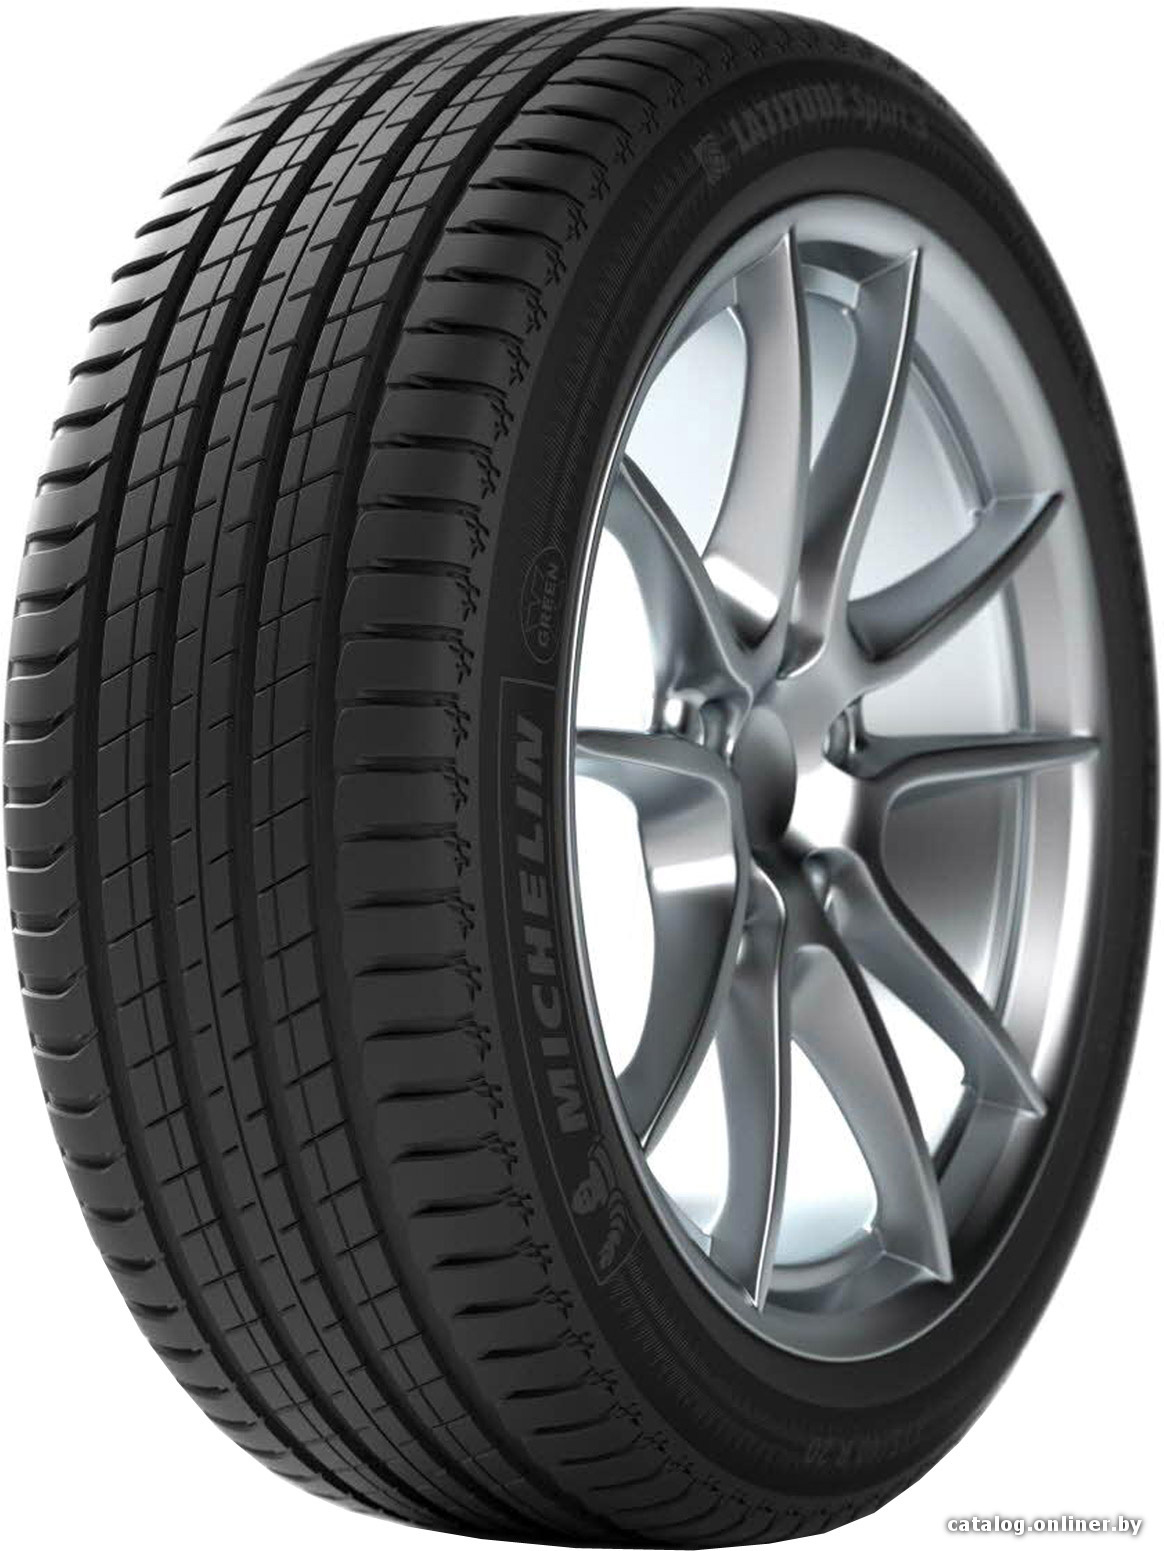 Автомобильные шины Michelin Latitude Sport 3 285/45R19 111W (run-flat)